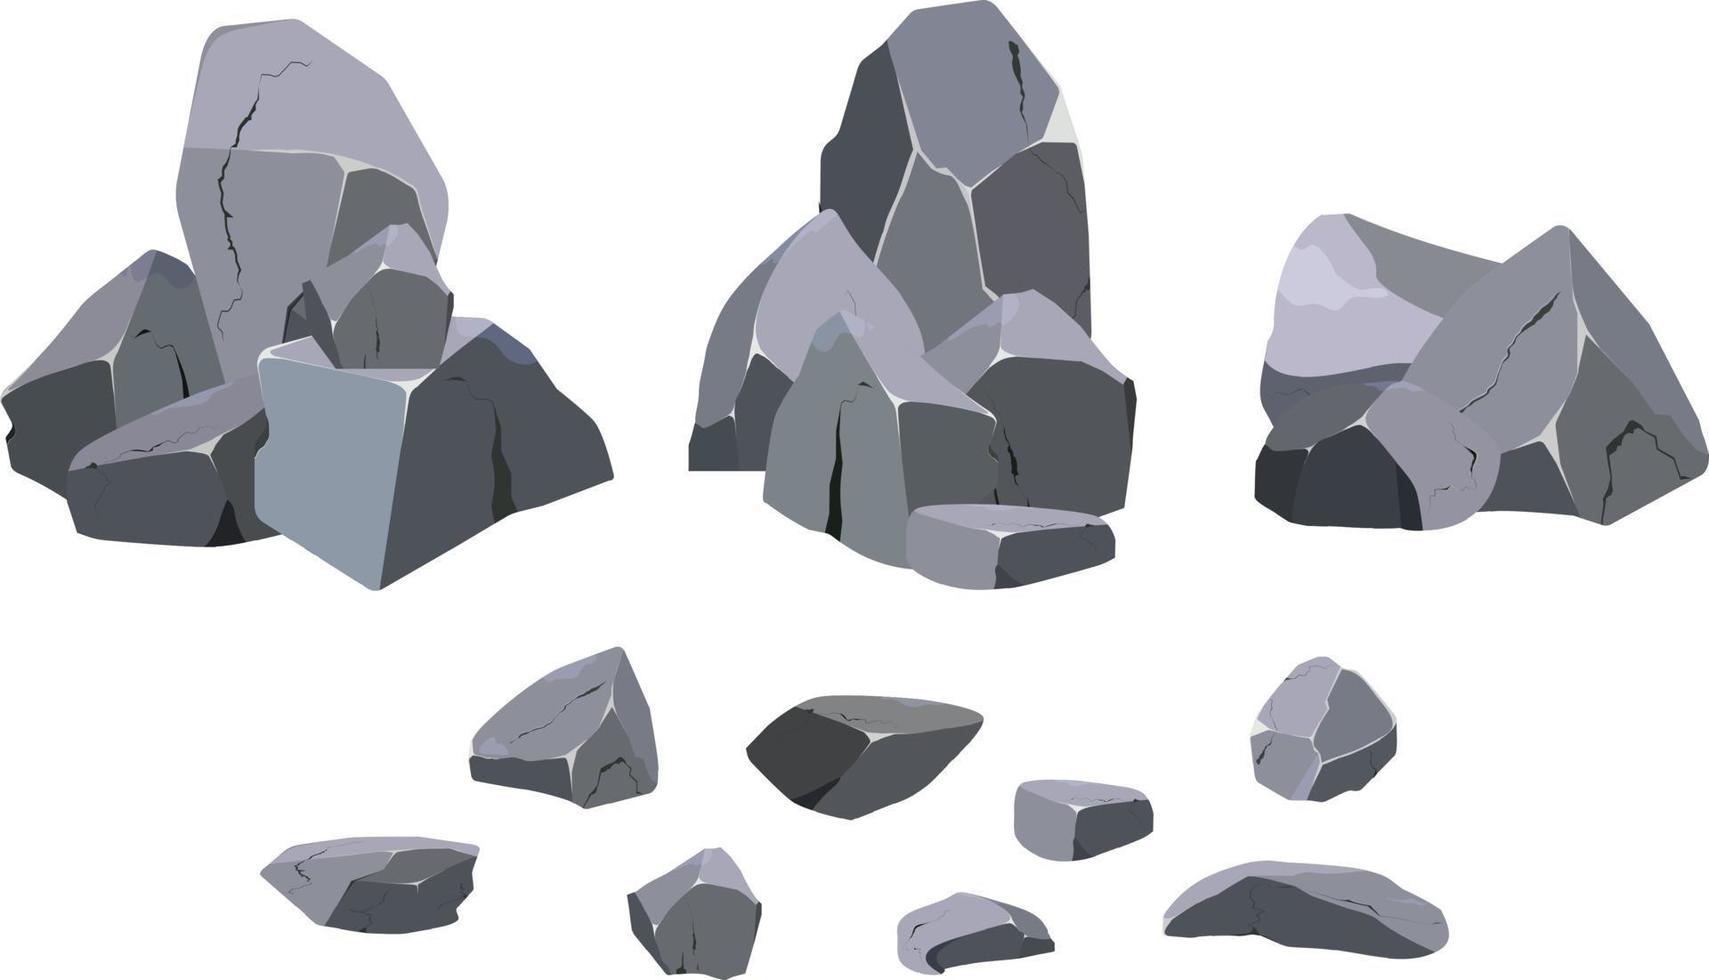 samling av stenar av olika former och buskar.kustnära småsten, kullerstenar, grus, mineraler och geologisk formationer.rock fragment, stenblock och byggnad material. vektor